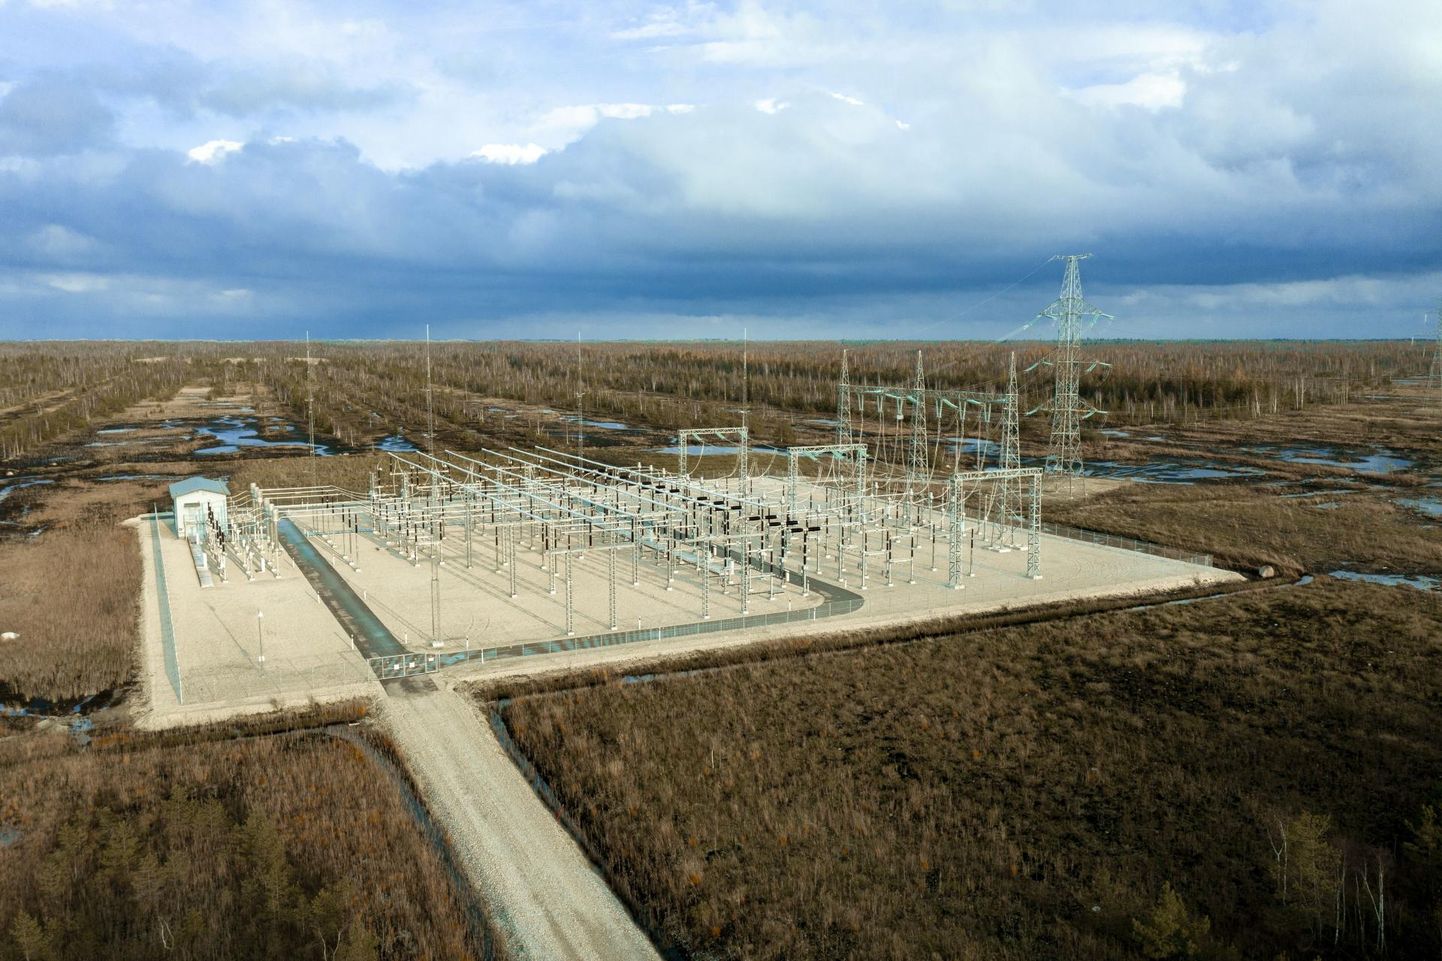 Ühe suurimatest kinnisvaratehingutest tegi 2020. aastal Eesti Energia, kui napsas endale 51,5 miljoni euroga Tootsi tuulepargi kinnistu.